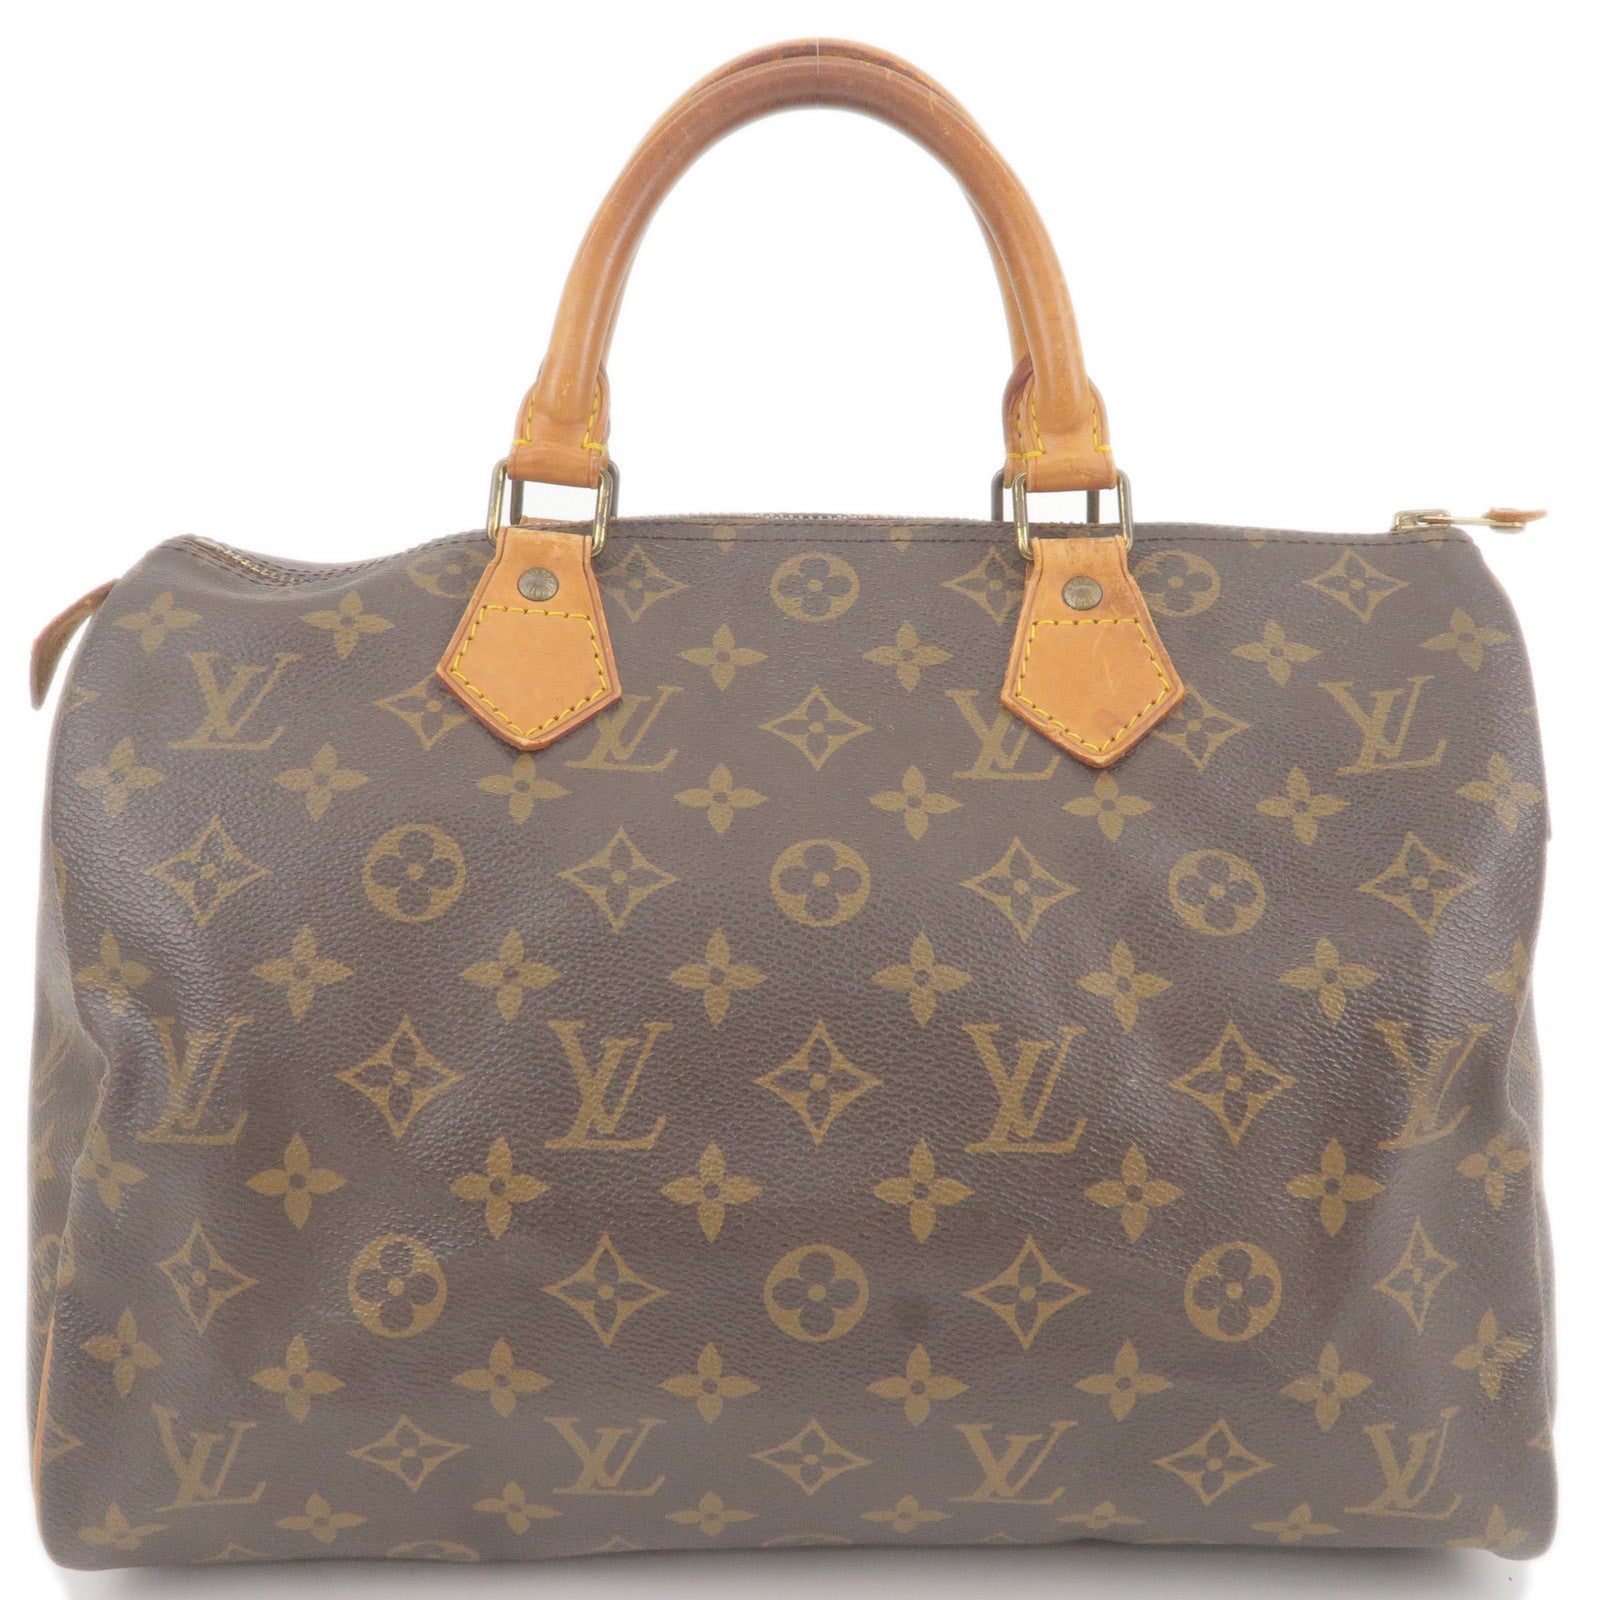 Louis Vuitton Monogram Canvas Speedy Bag 30 Pink